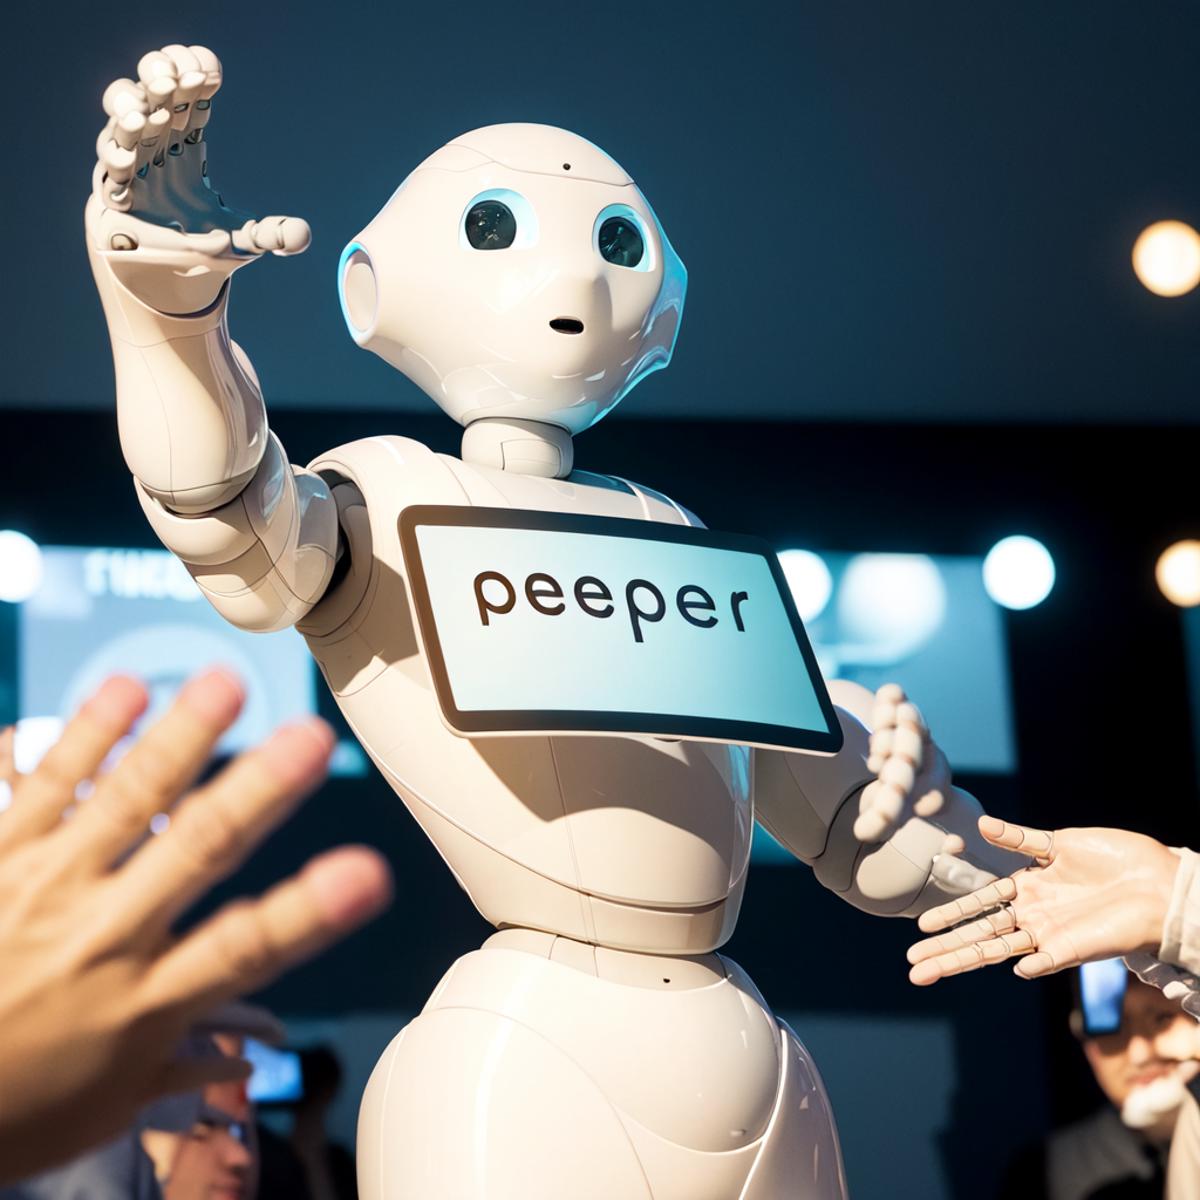 ペッパー Pepper (robot) image by phi_light